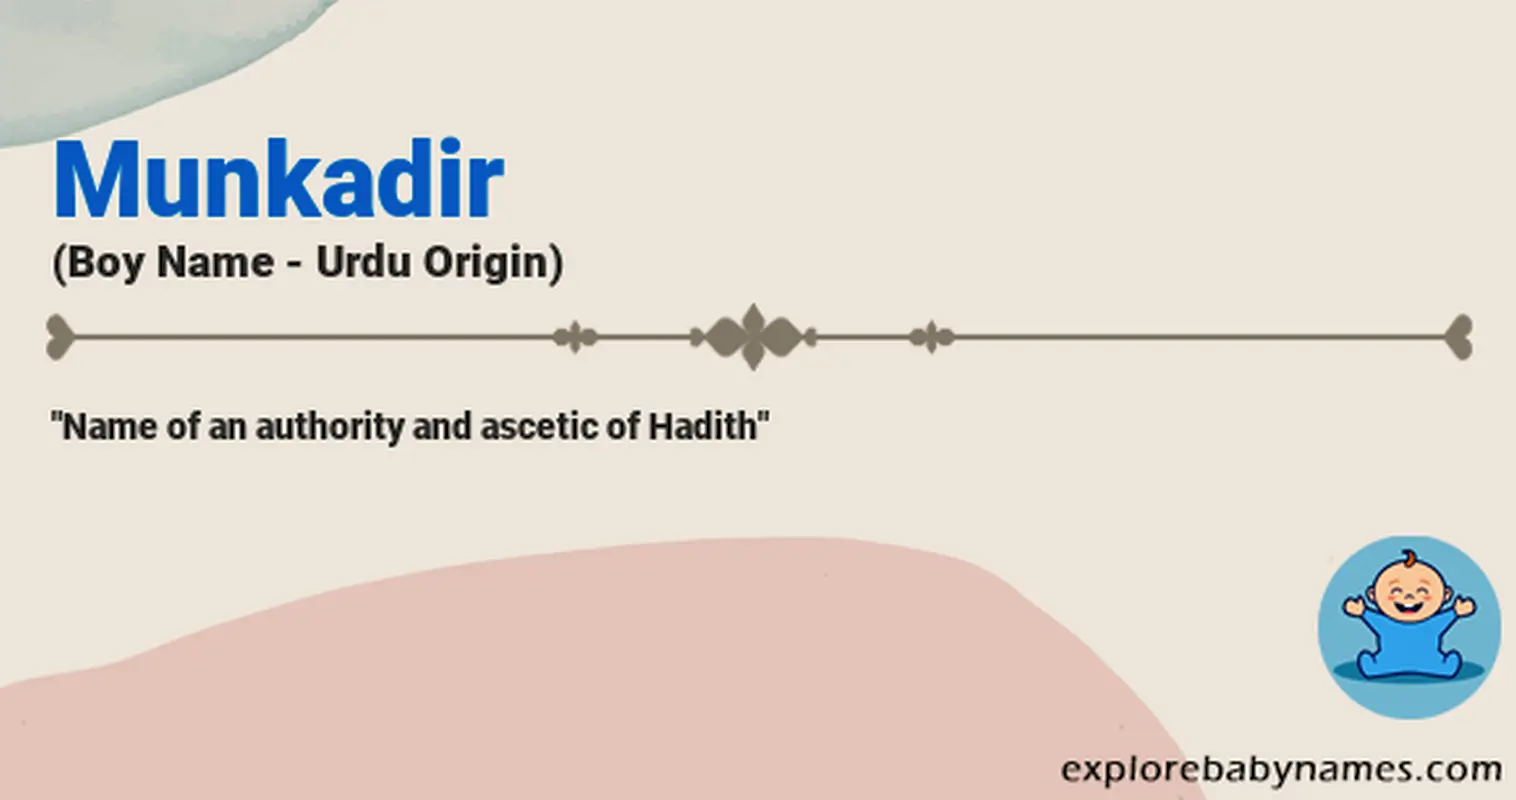 Meaning of Munkadir